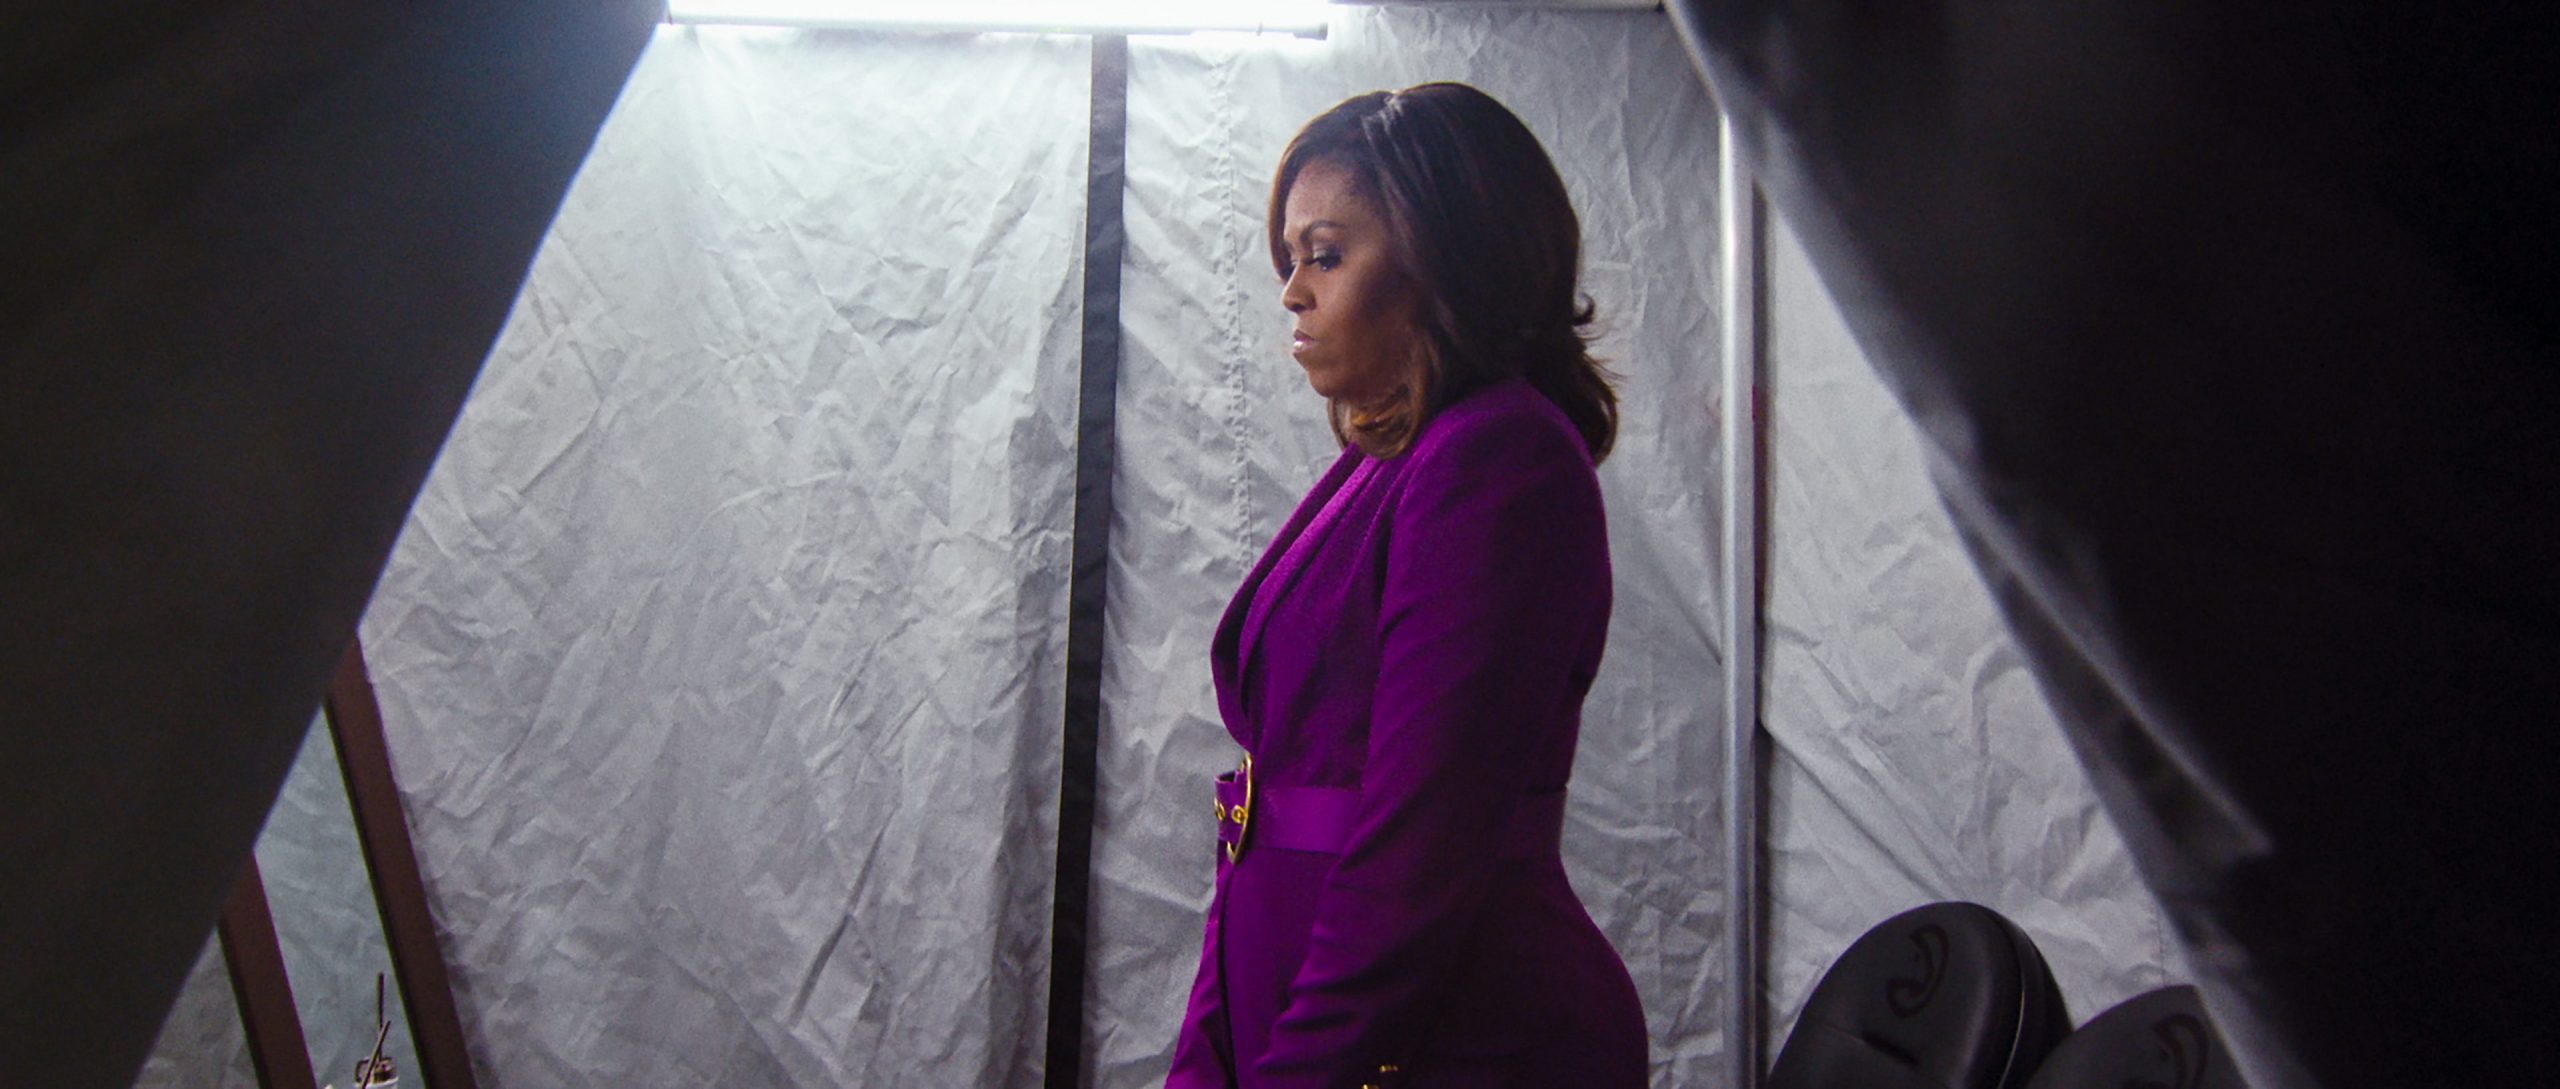 Netflix giới thiệu phim tài liệu 'Becoming' mới nói về phu nhân Michelle Obama, sẽ phát hành vào 6/5